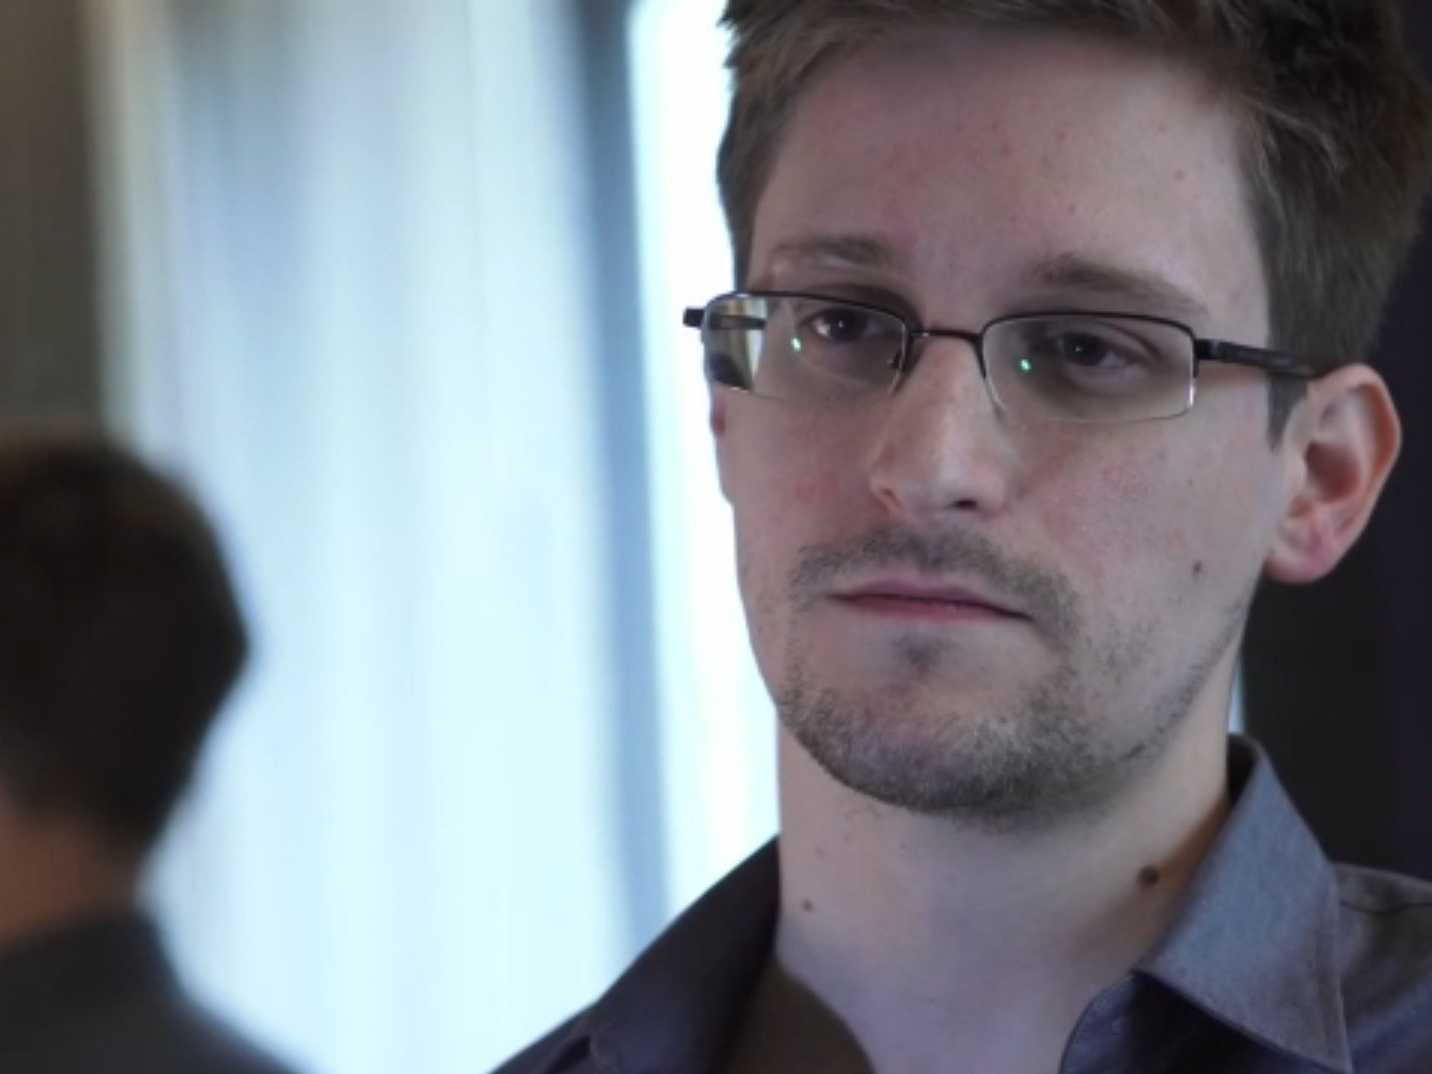 Remise de prix en Norvège : une chaise vide pour honorer Snowden 